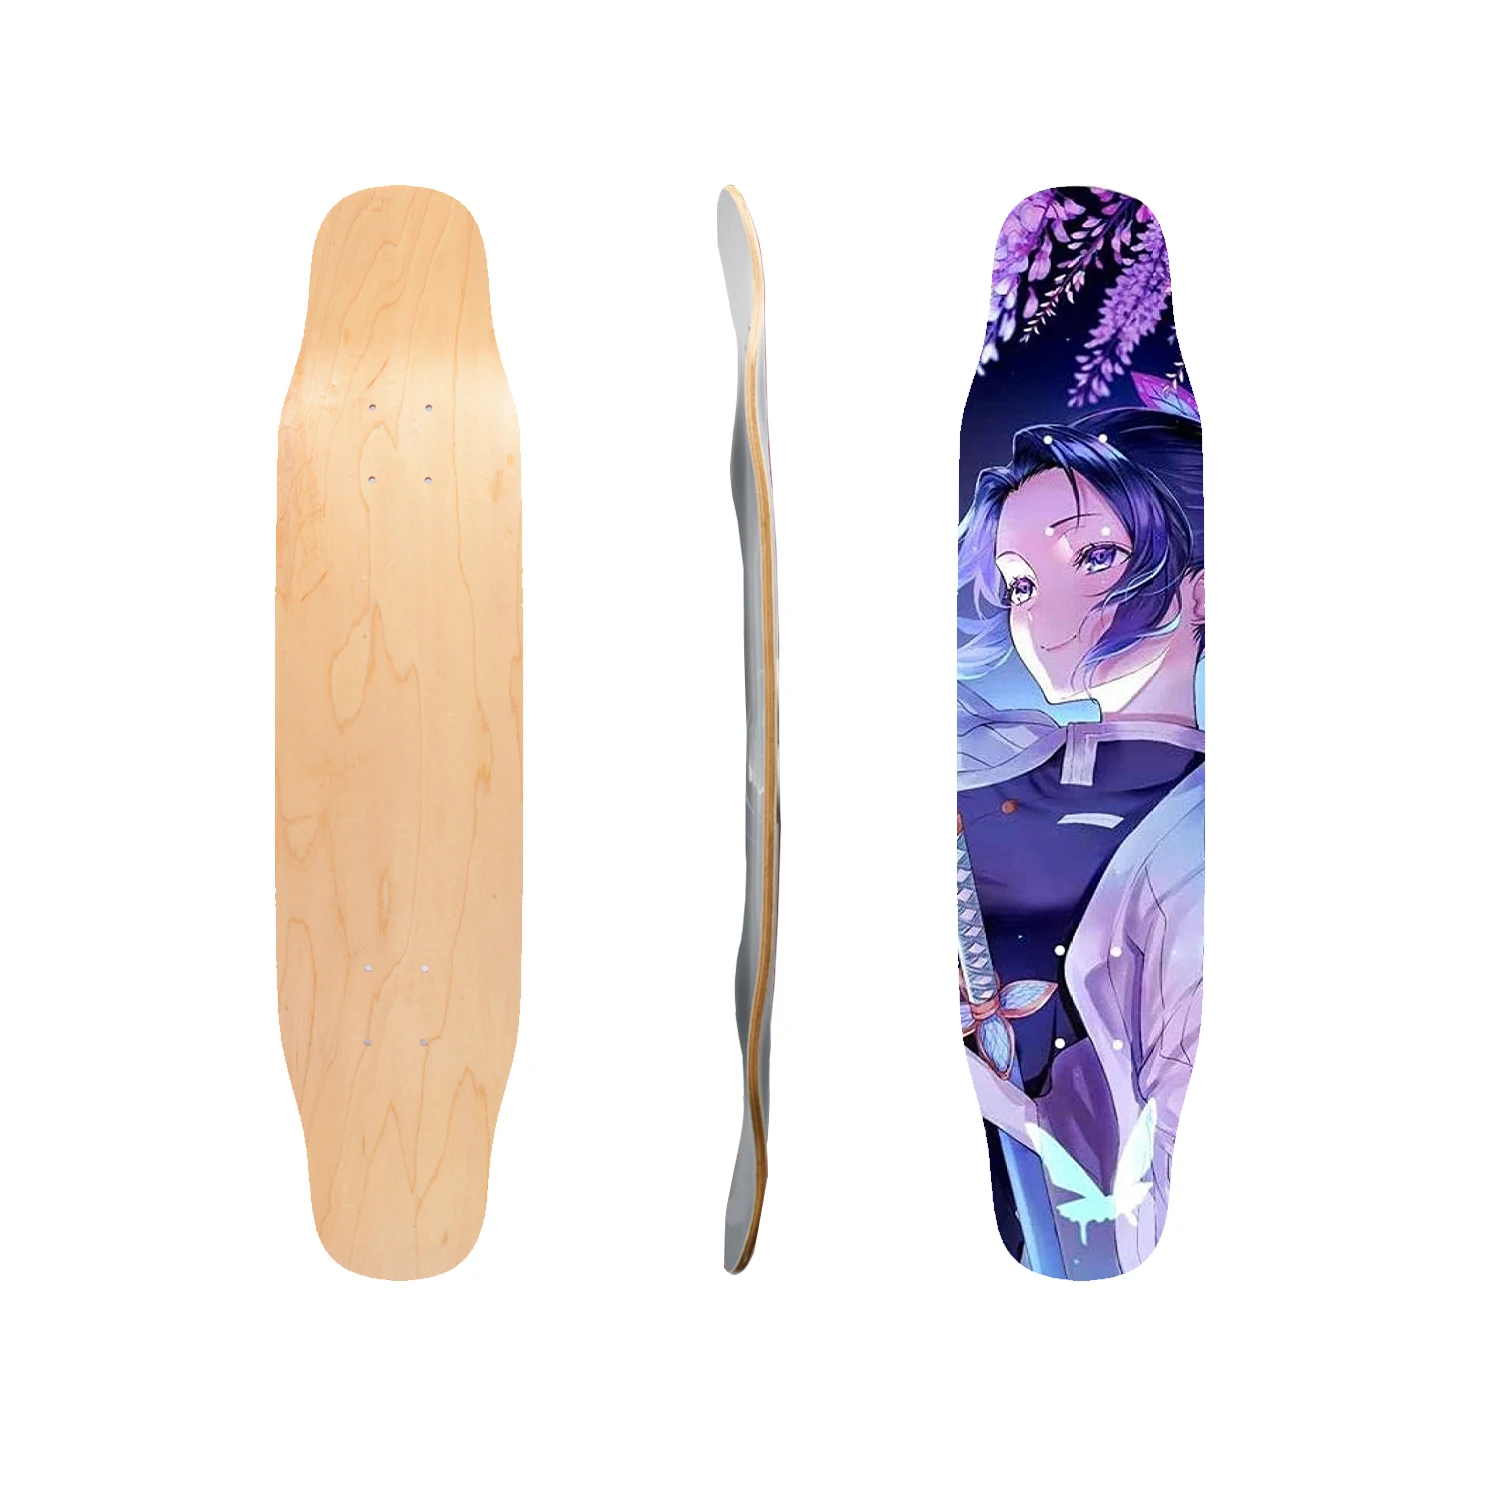 Best Sale Thermal transfer pattern Skate Board Decks 7 Ply Maple Blank Skateboard Longboard Decks